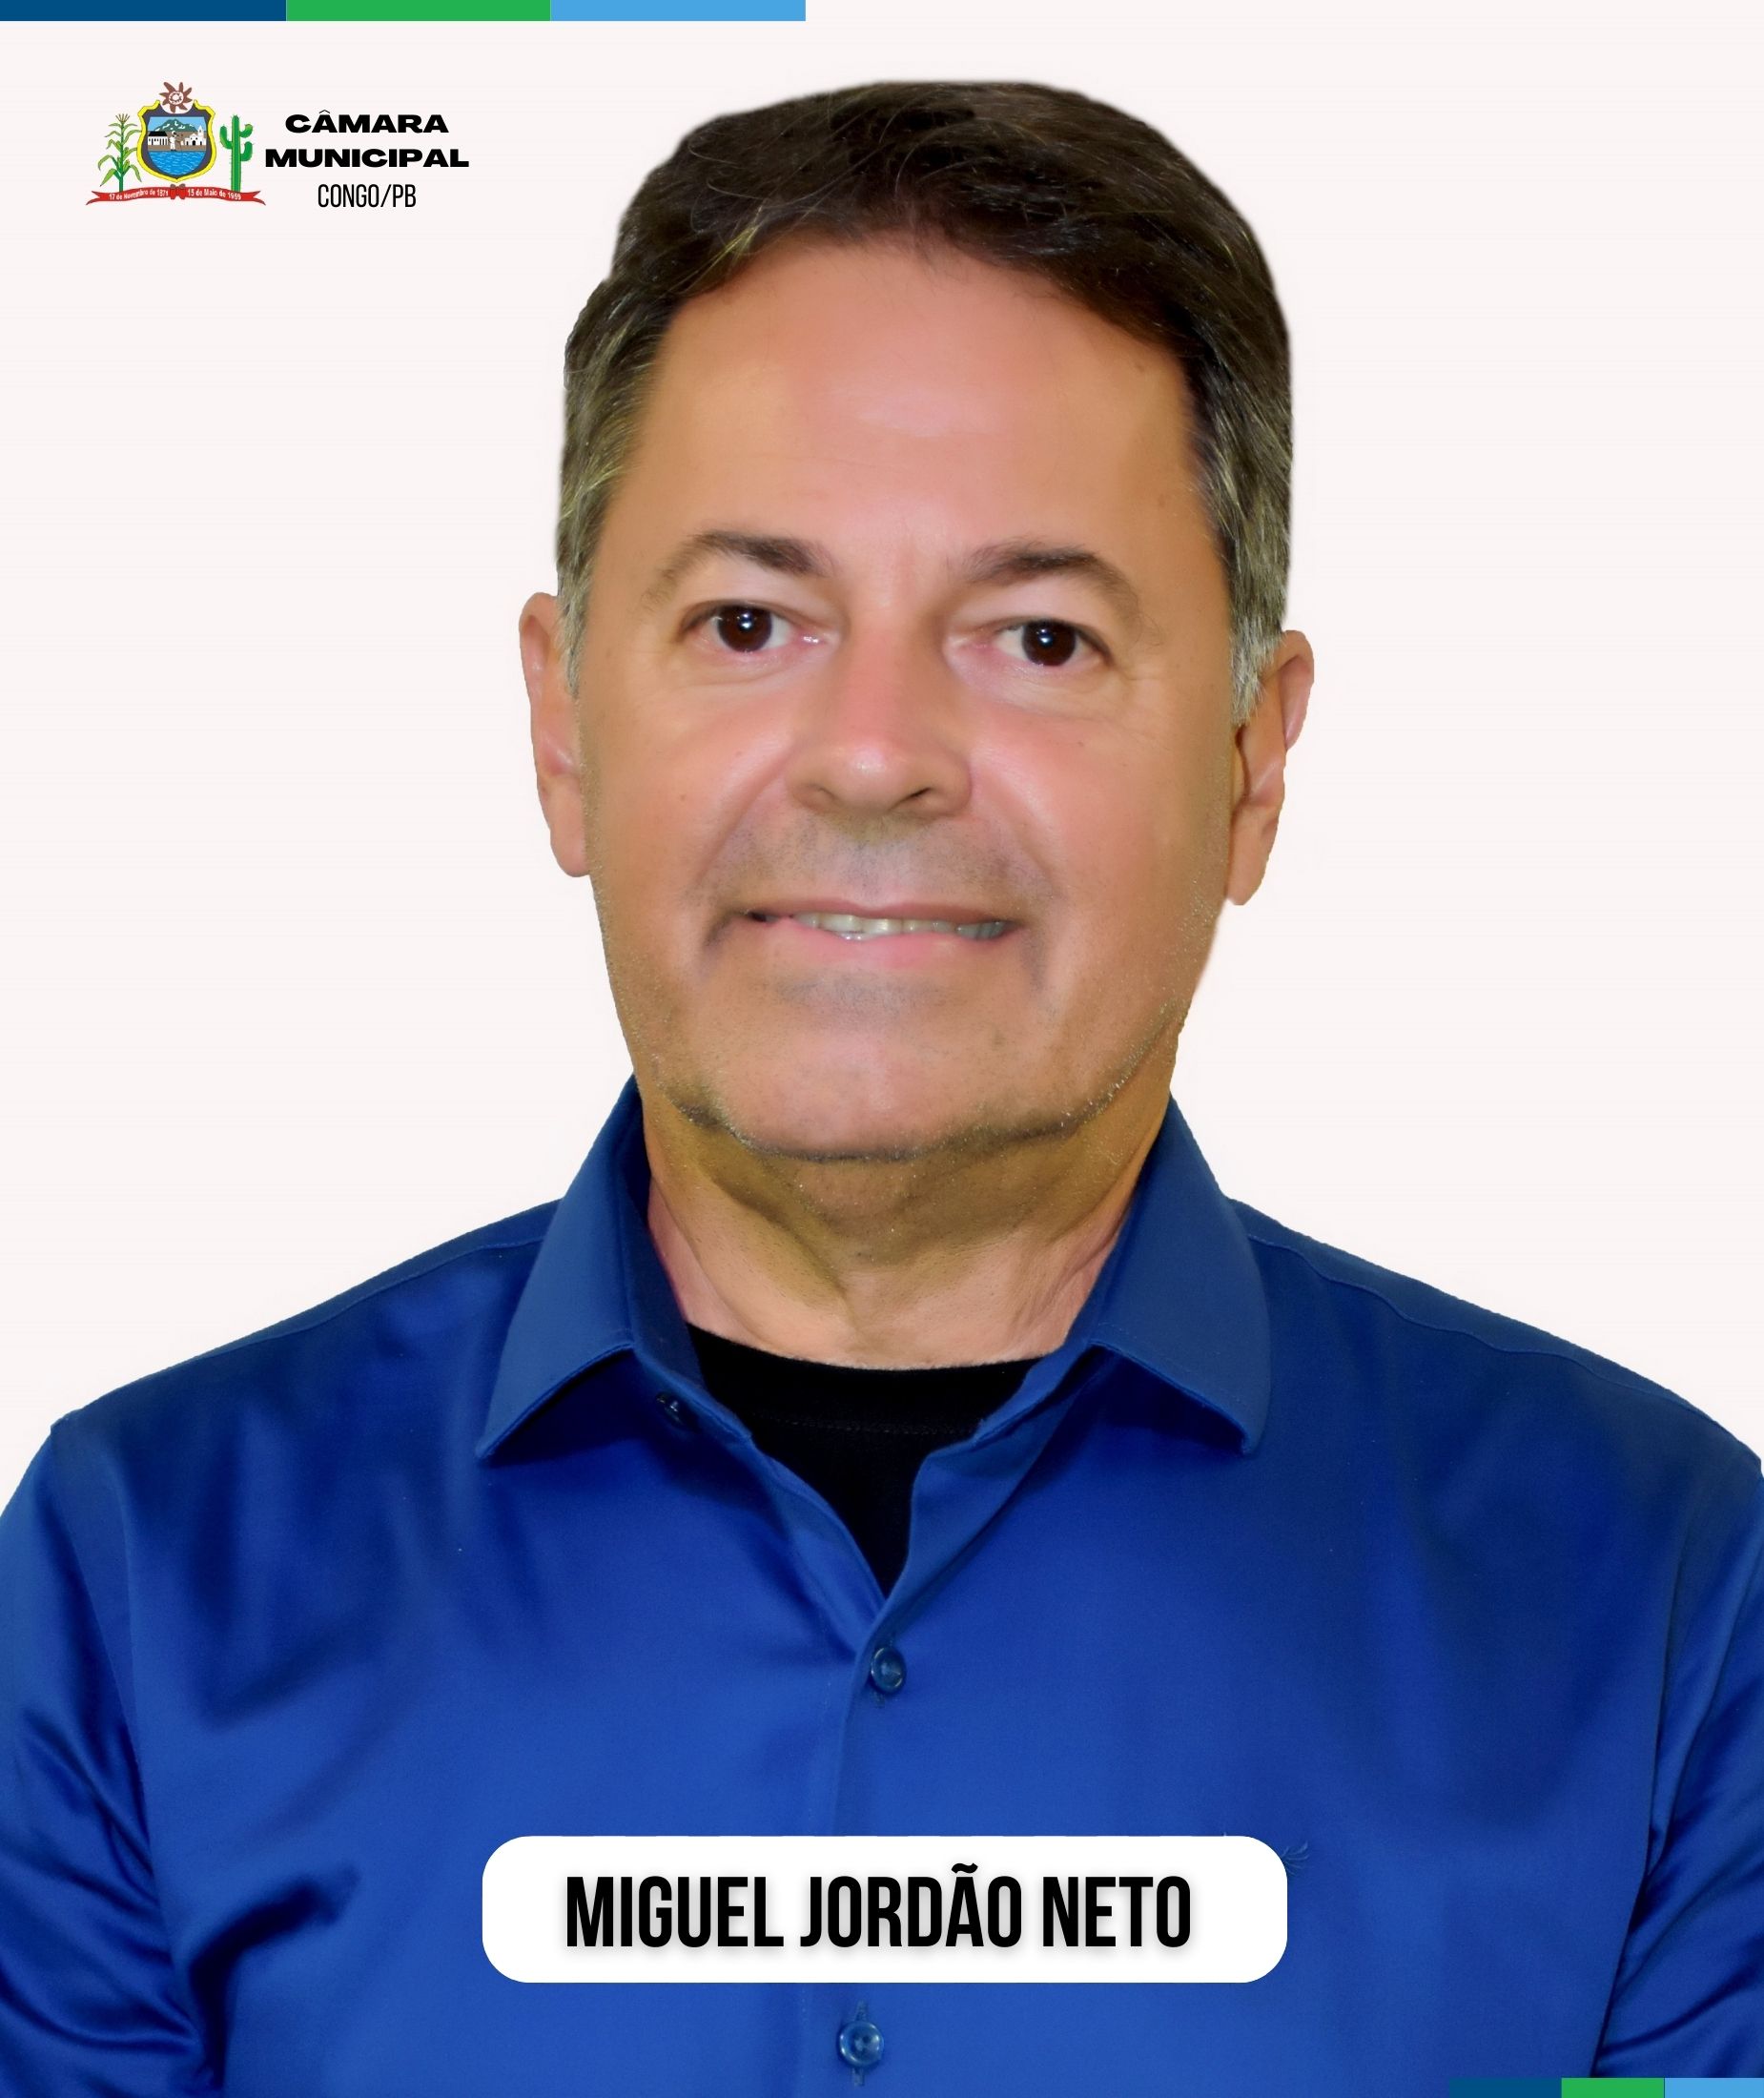 Miguel Jordão Neto